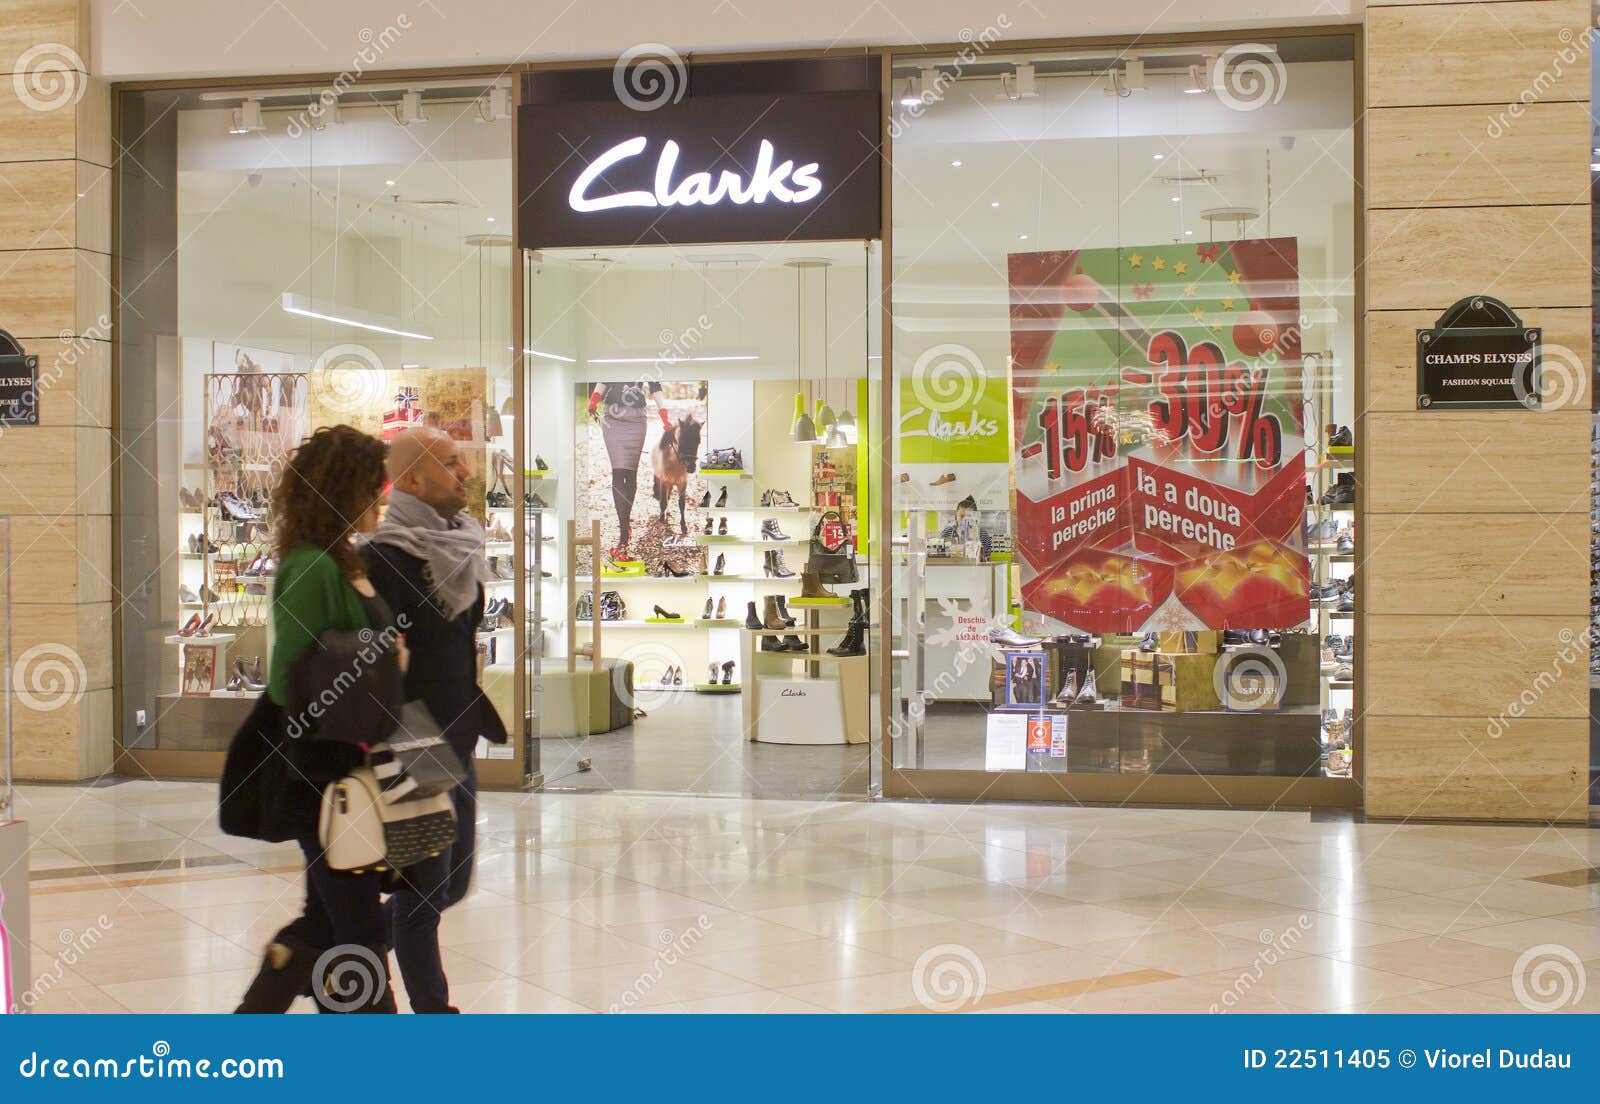 clarks sklep katowice